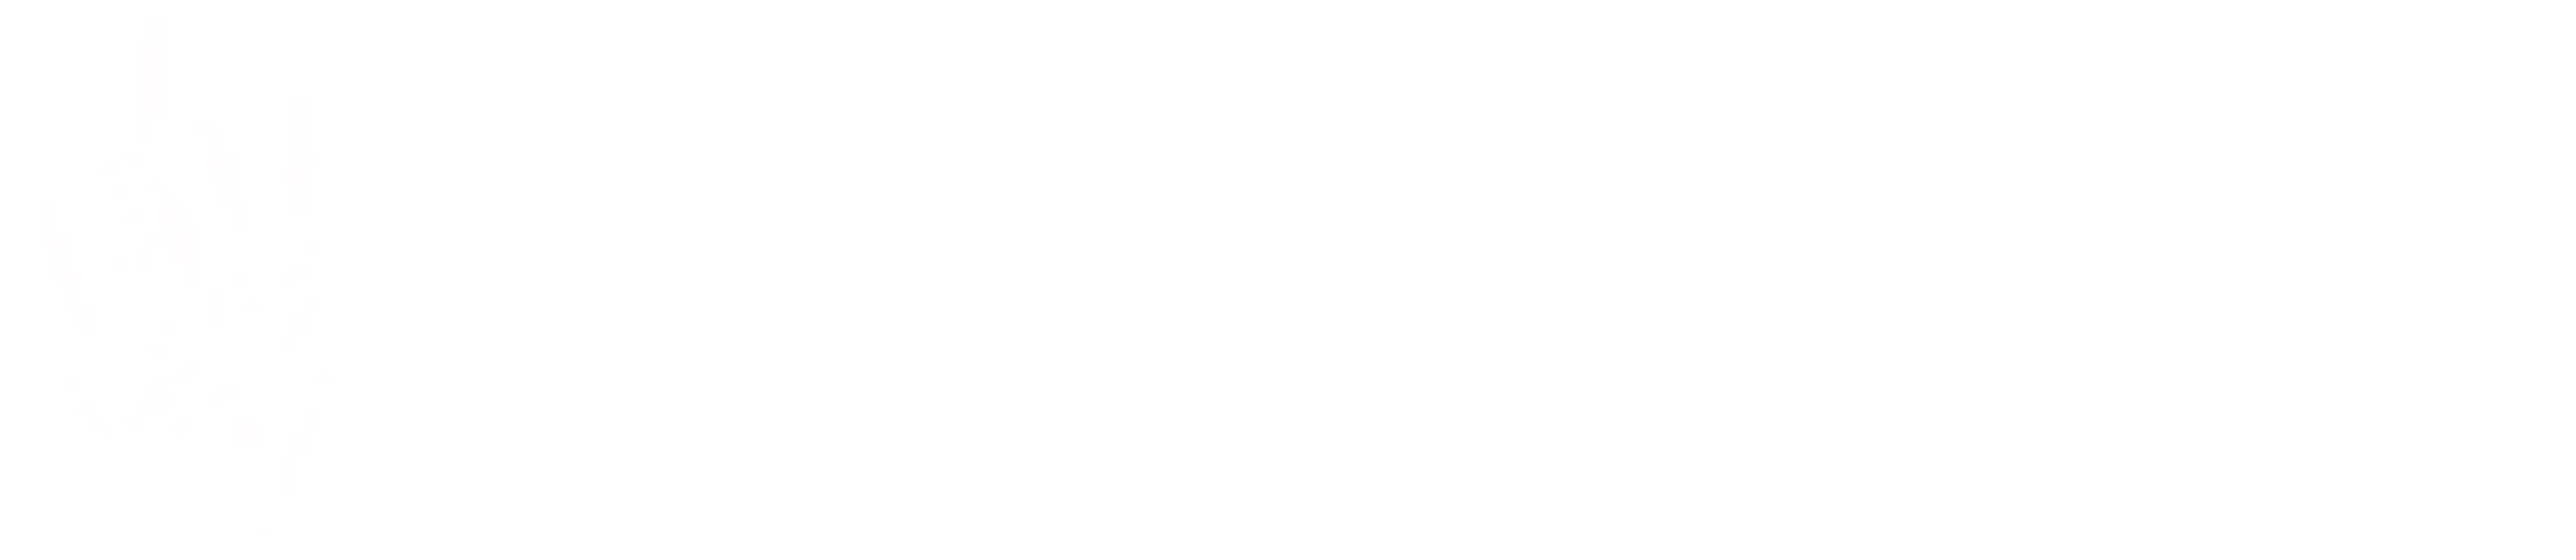 Logo Riserva Naturale foce del fiume Mesima Chiaro CON TESTO